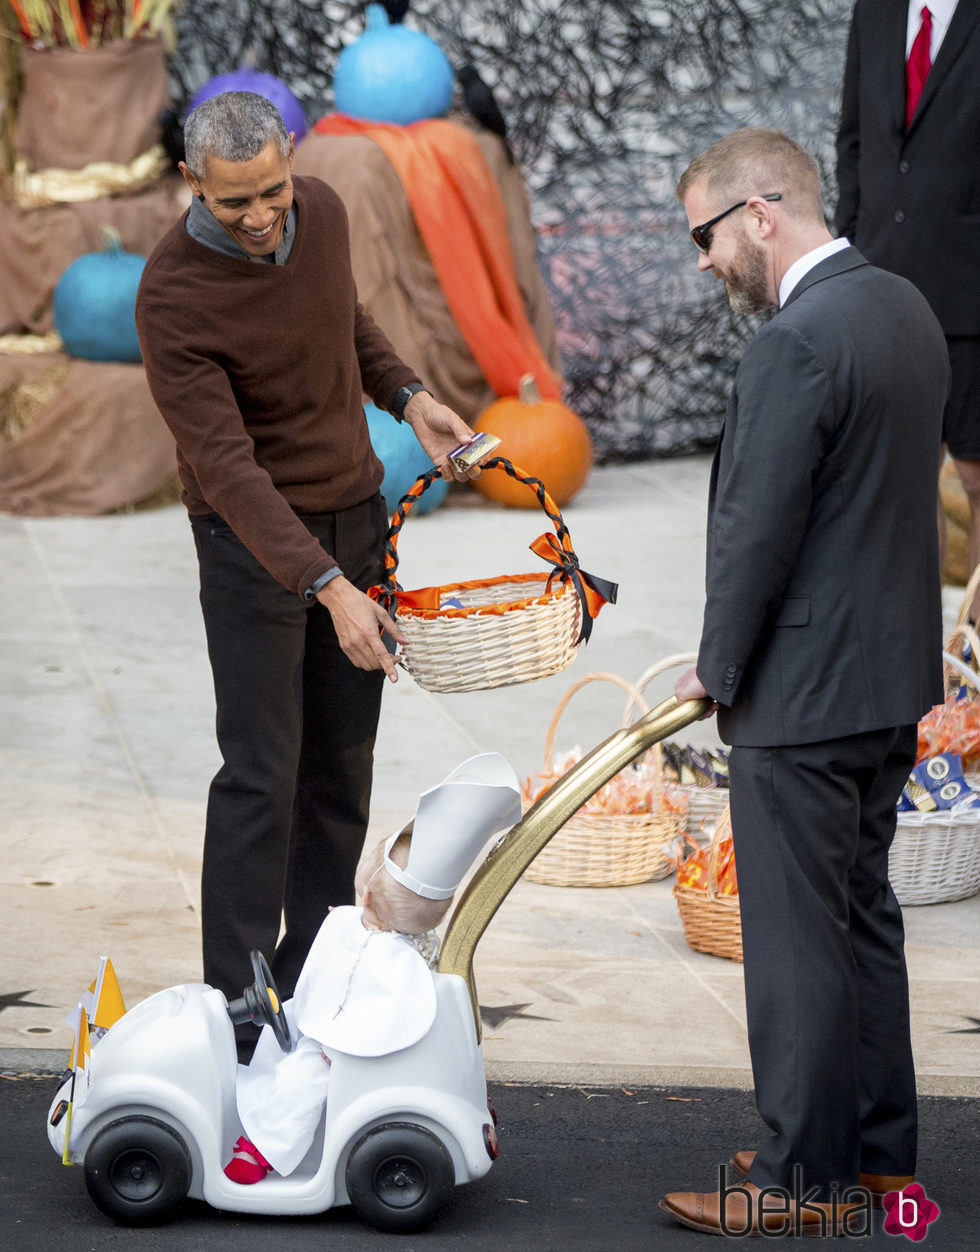 Barack Obama dando dulces por Halloween 2015 a un niño disfrazado de Papa